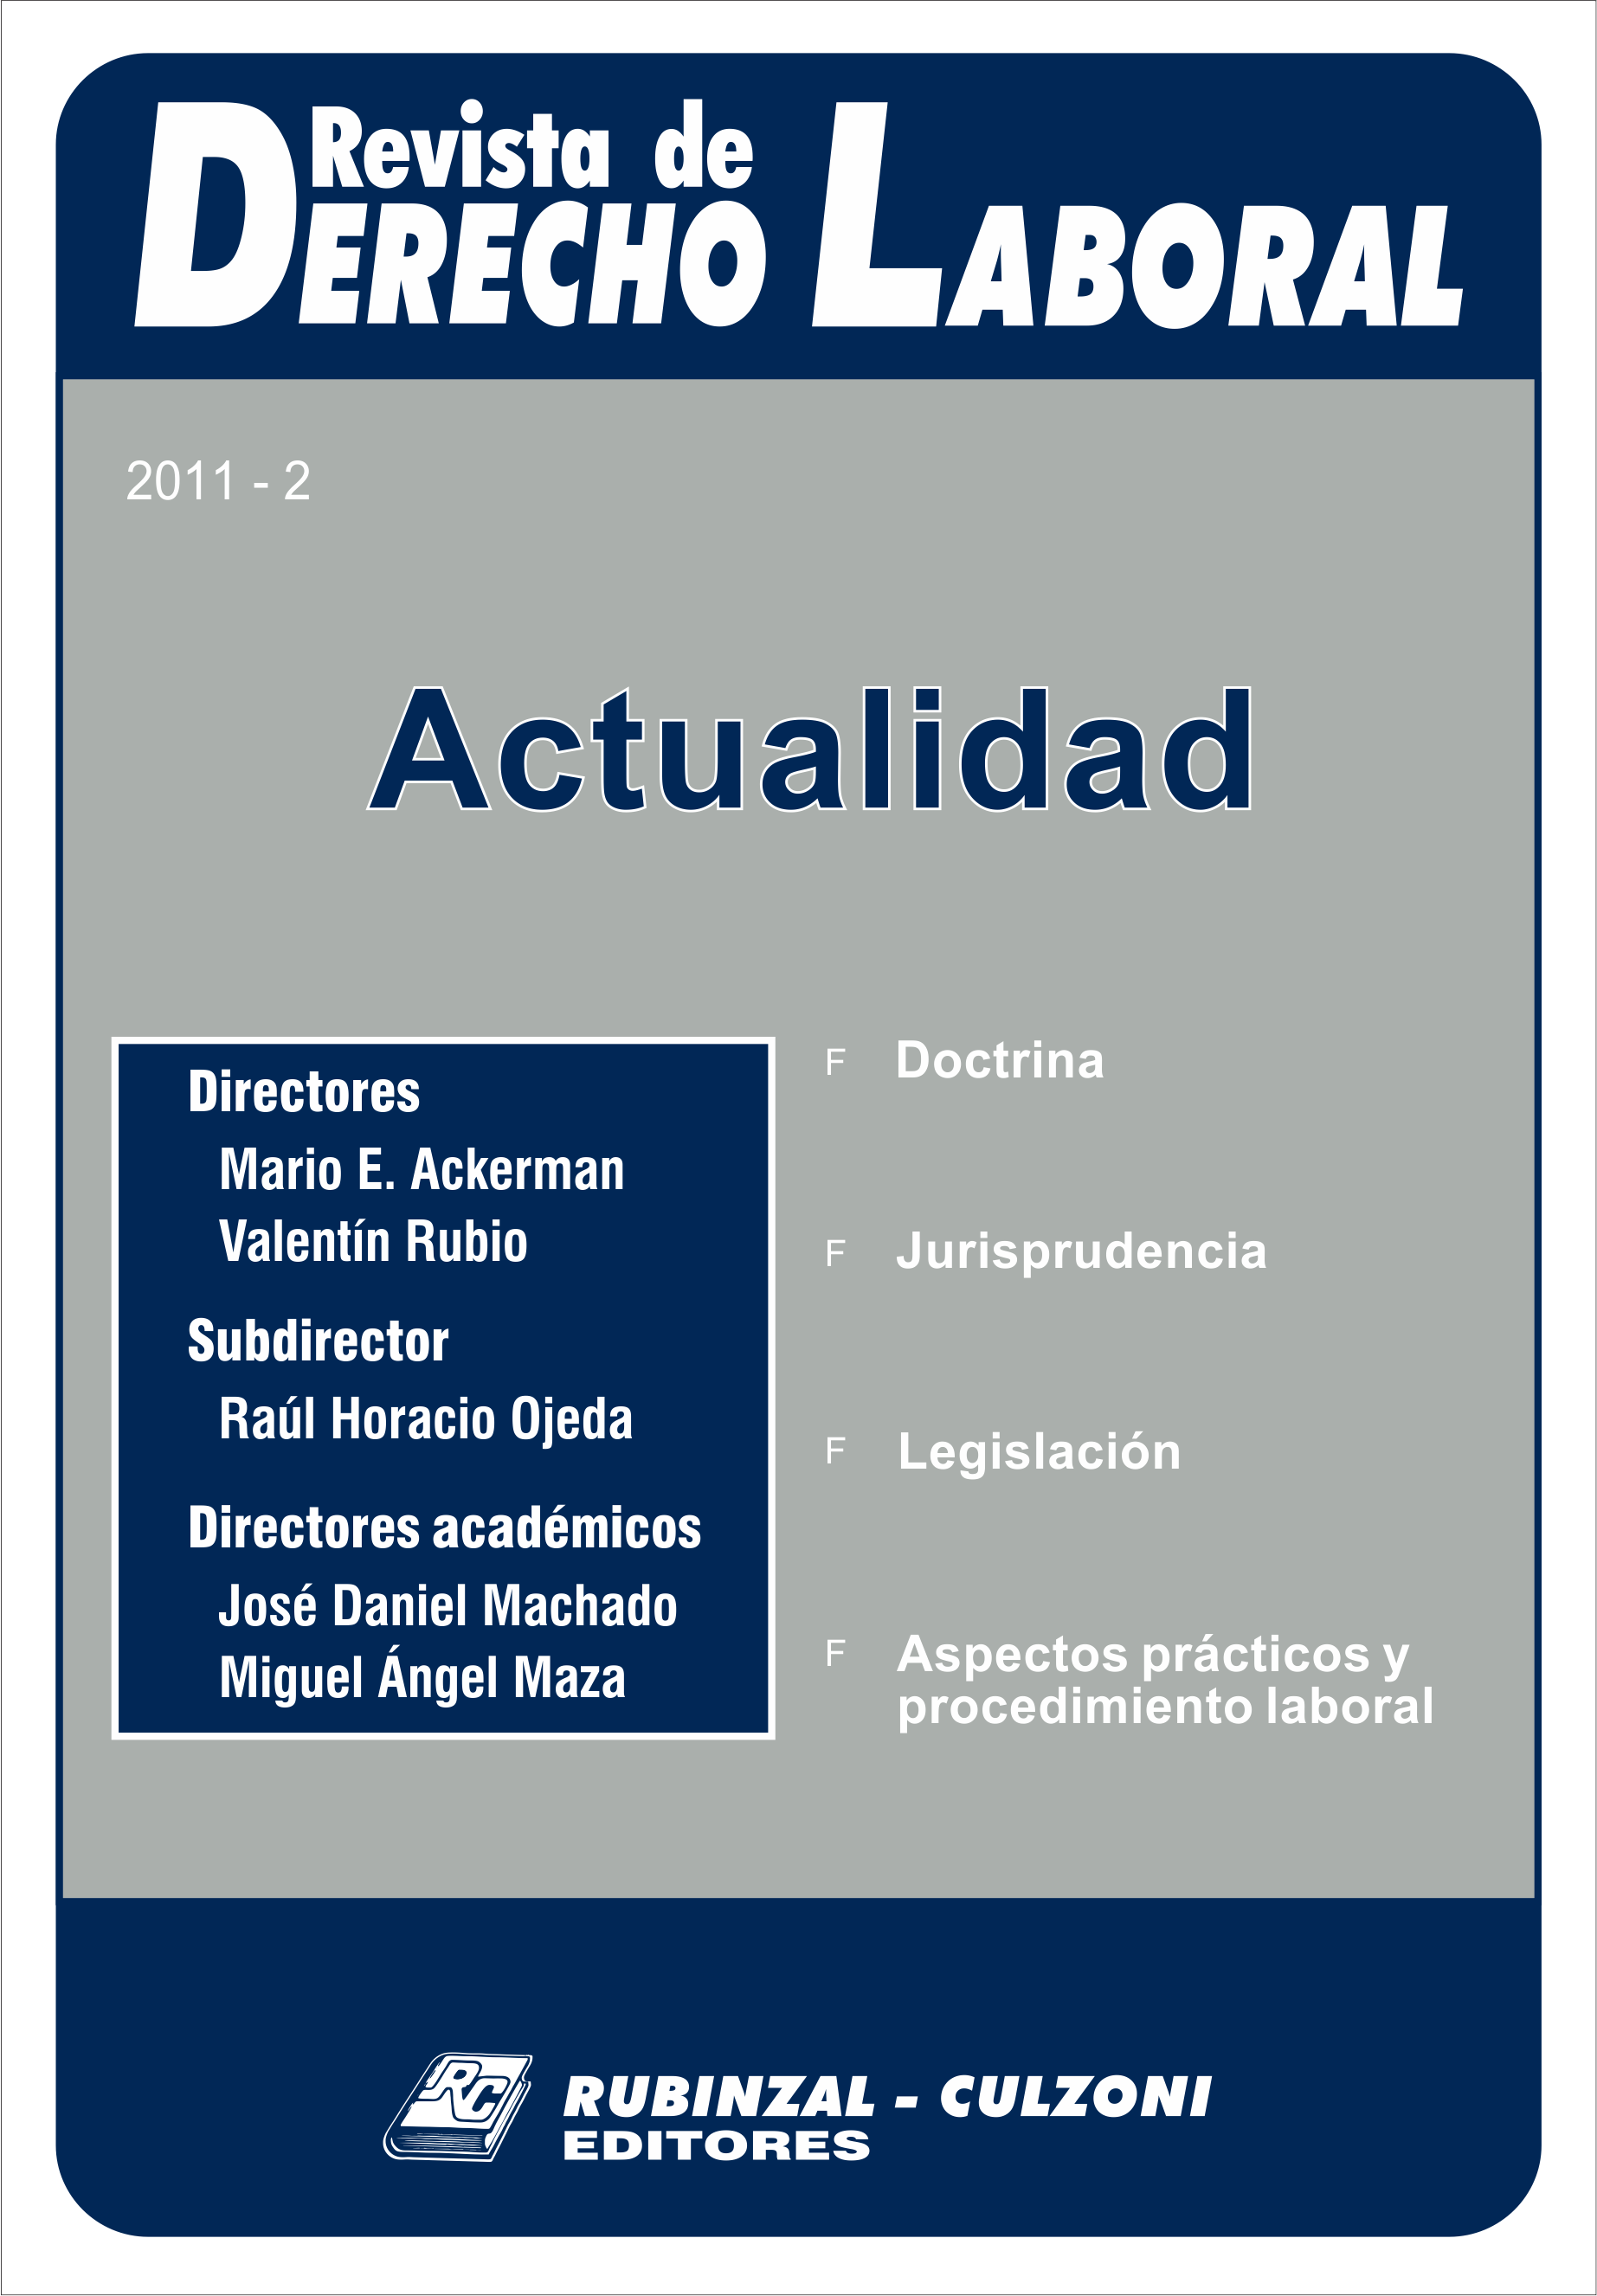 Revista de Derecho Laboral Actualidad - Año 2011 - 2